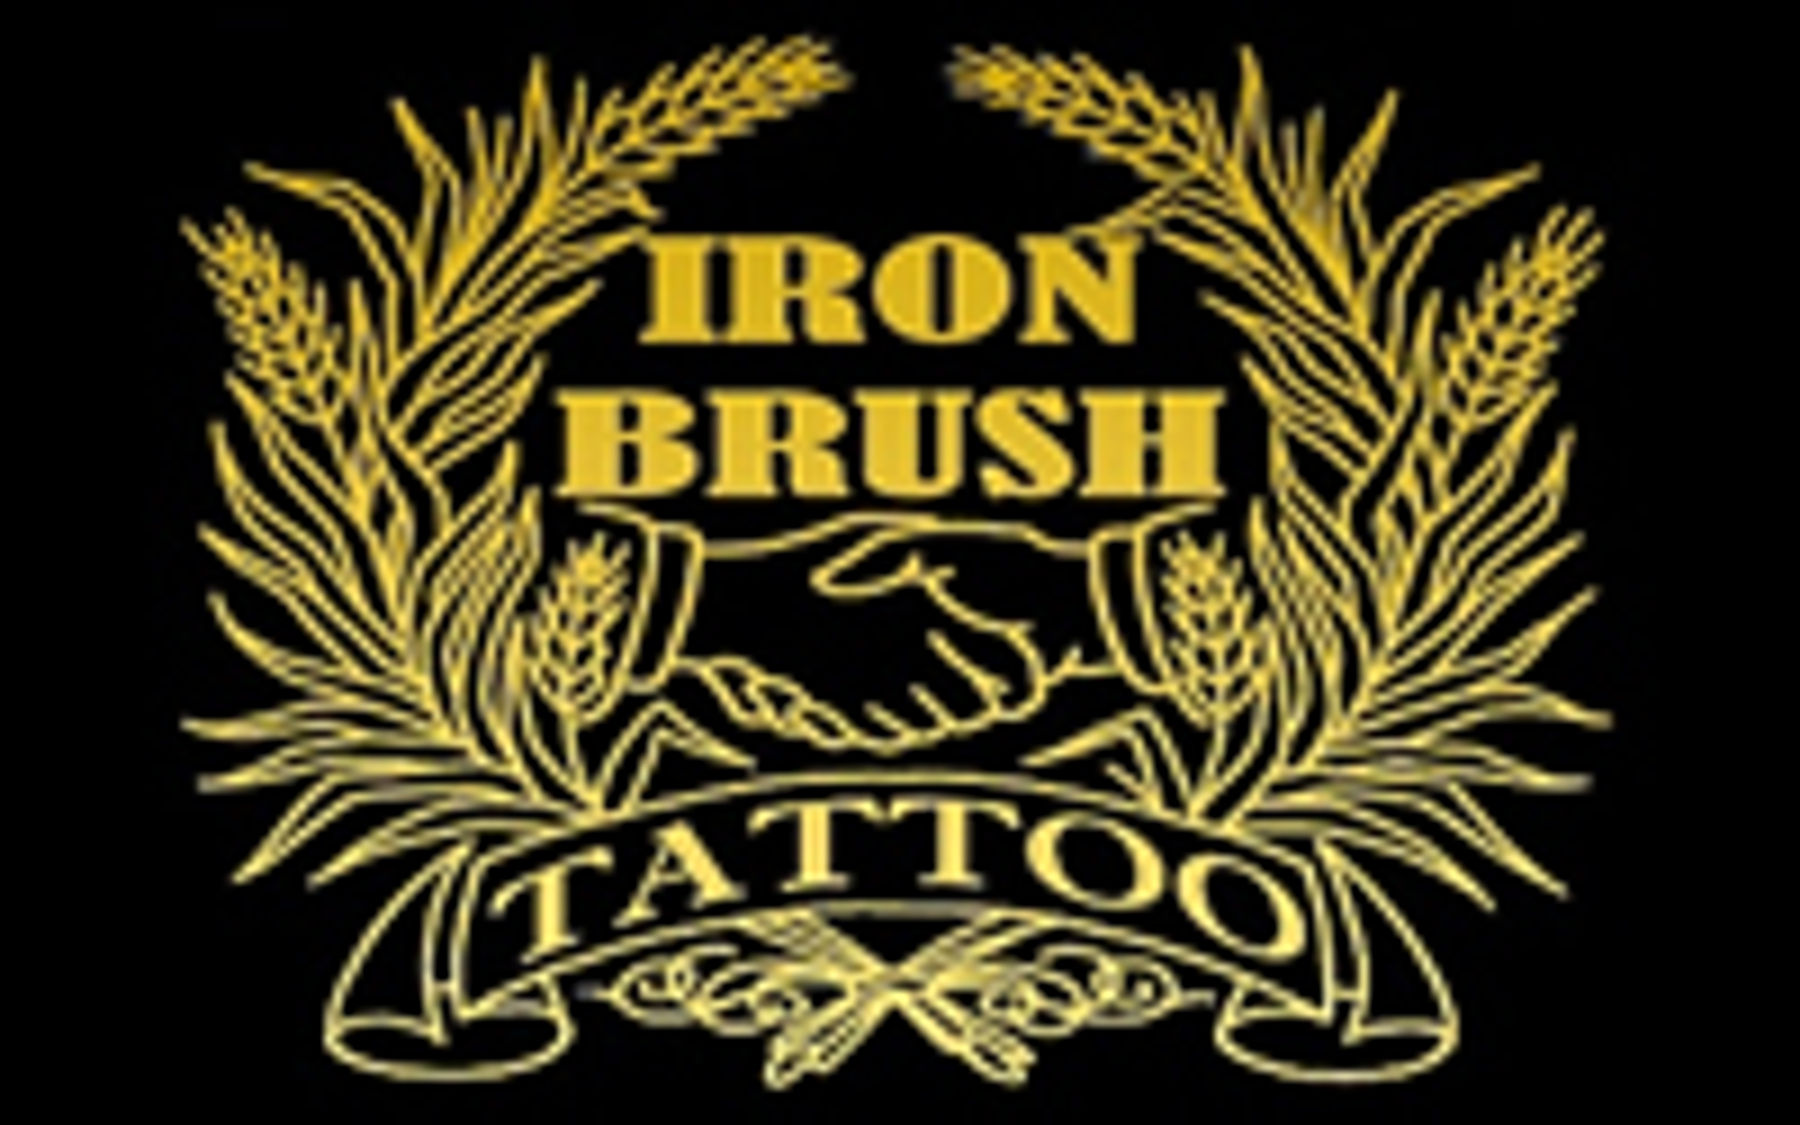 New Art This Week 52317  Iron Brush Tattoo